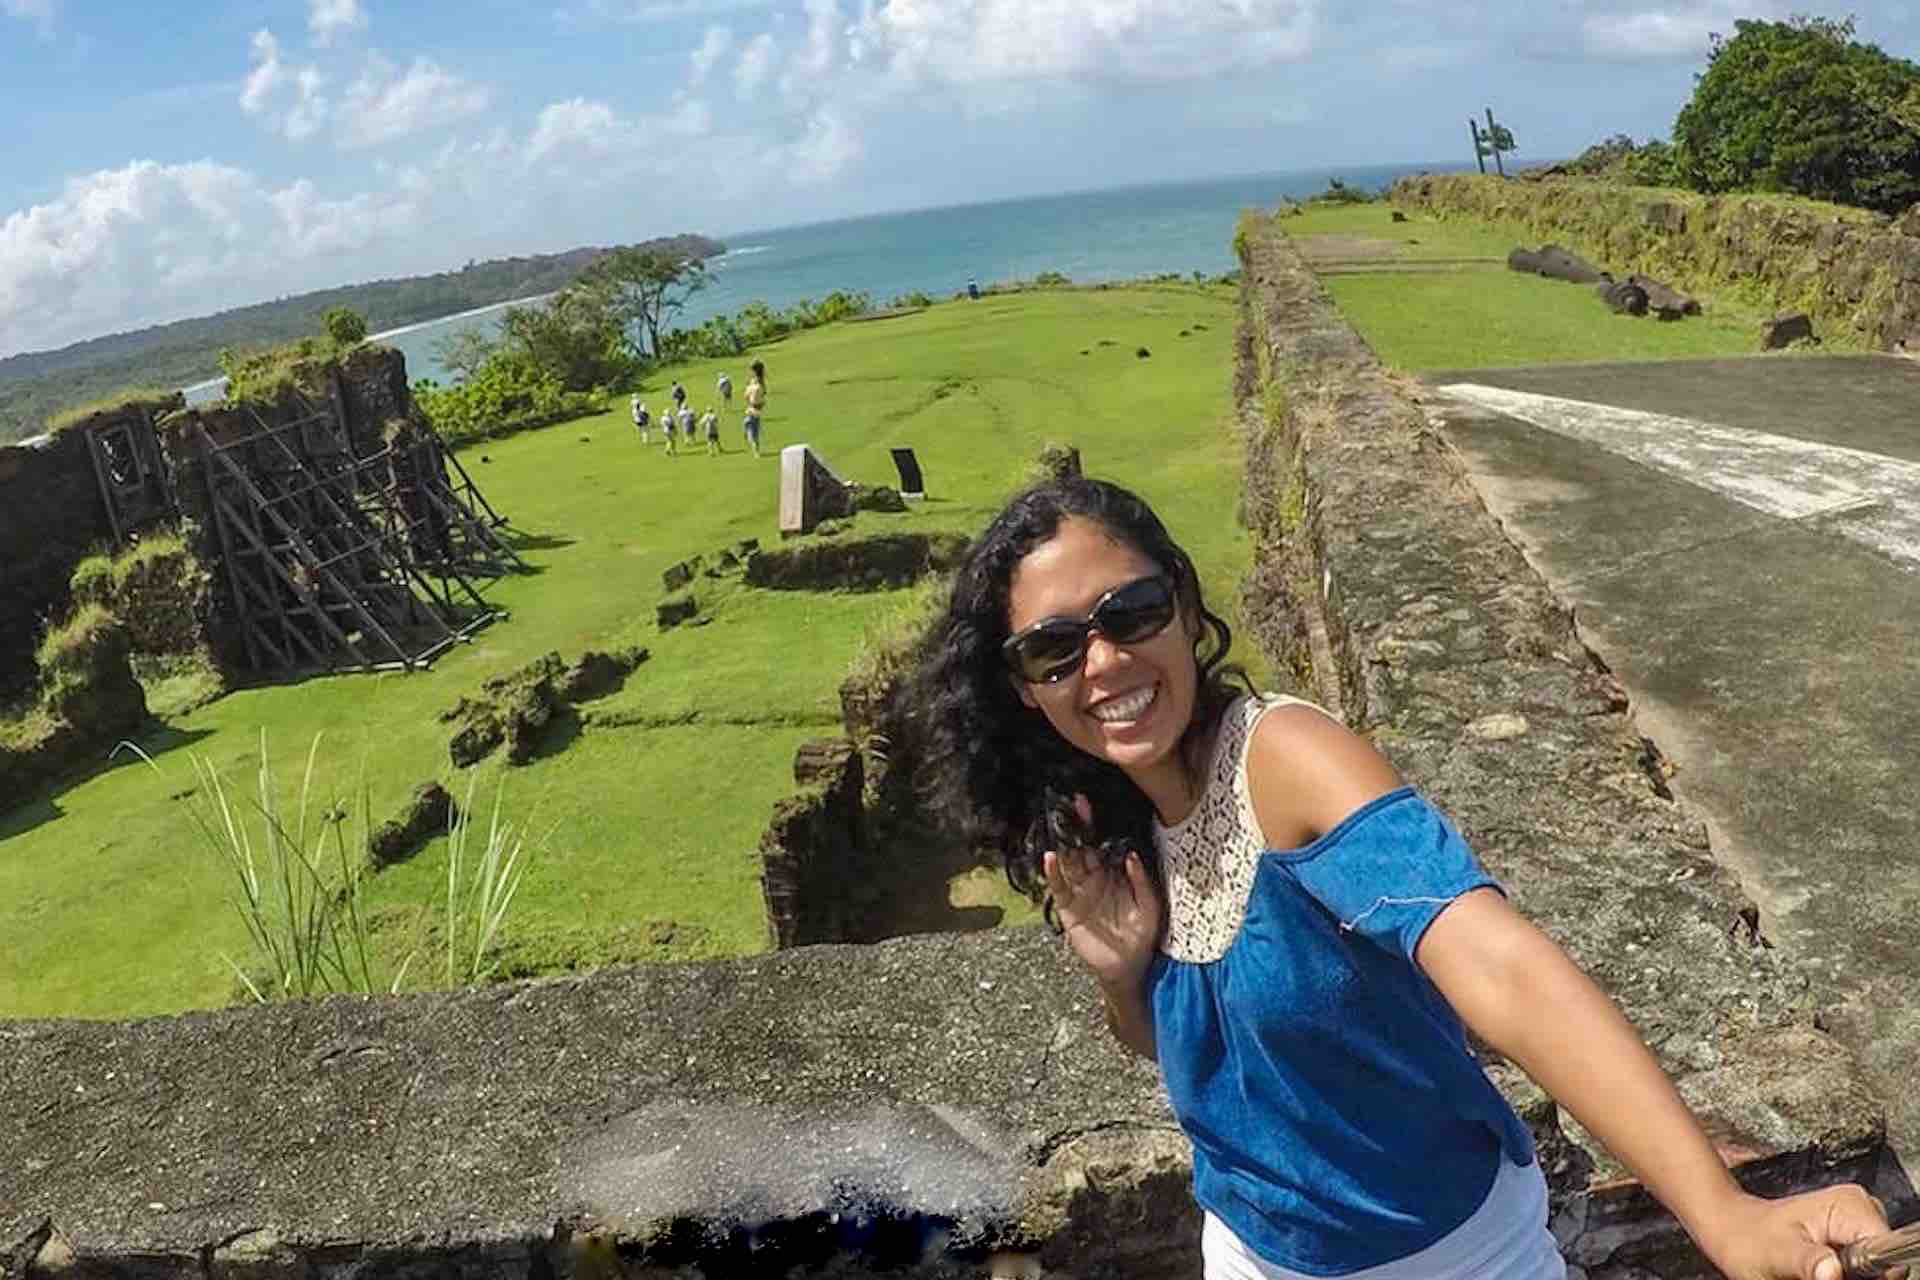 Fort San Lorenzo Ocean to Ocean Panama tour guest selfie